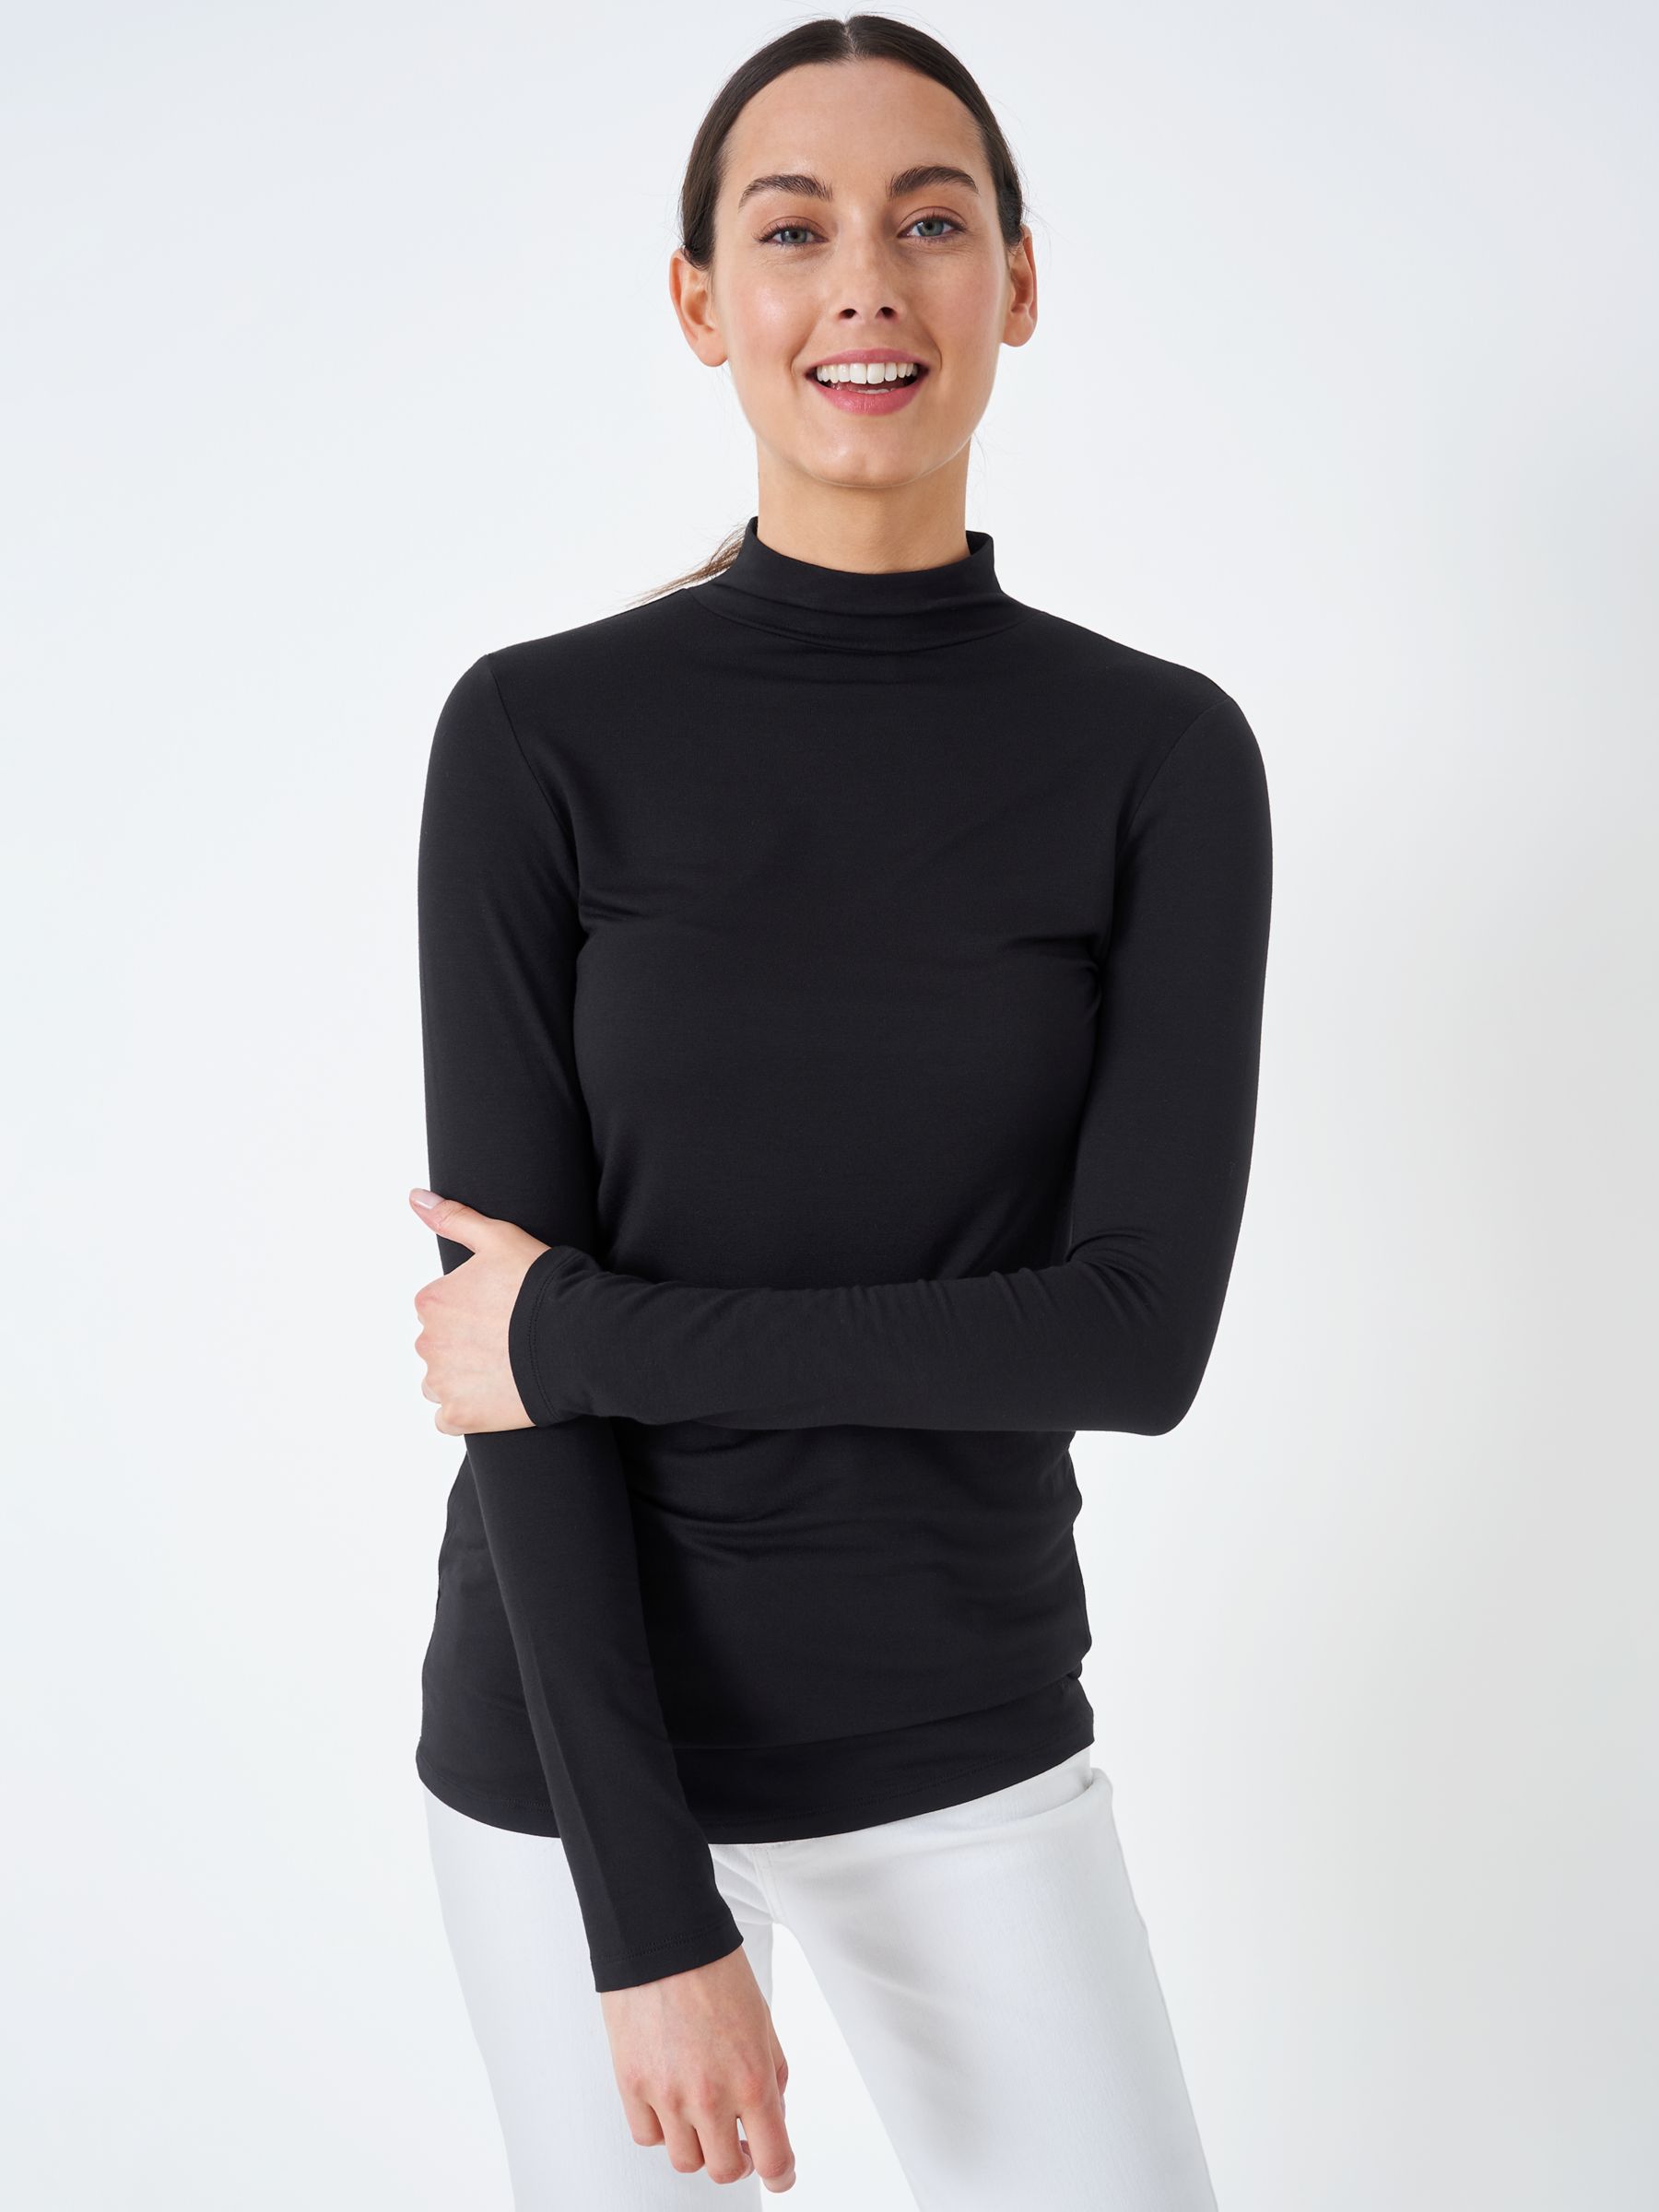 Trisica - Long-Sleeve Plain Cutout Bodysuit Top